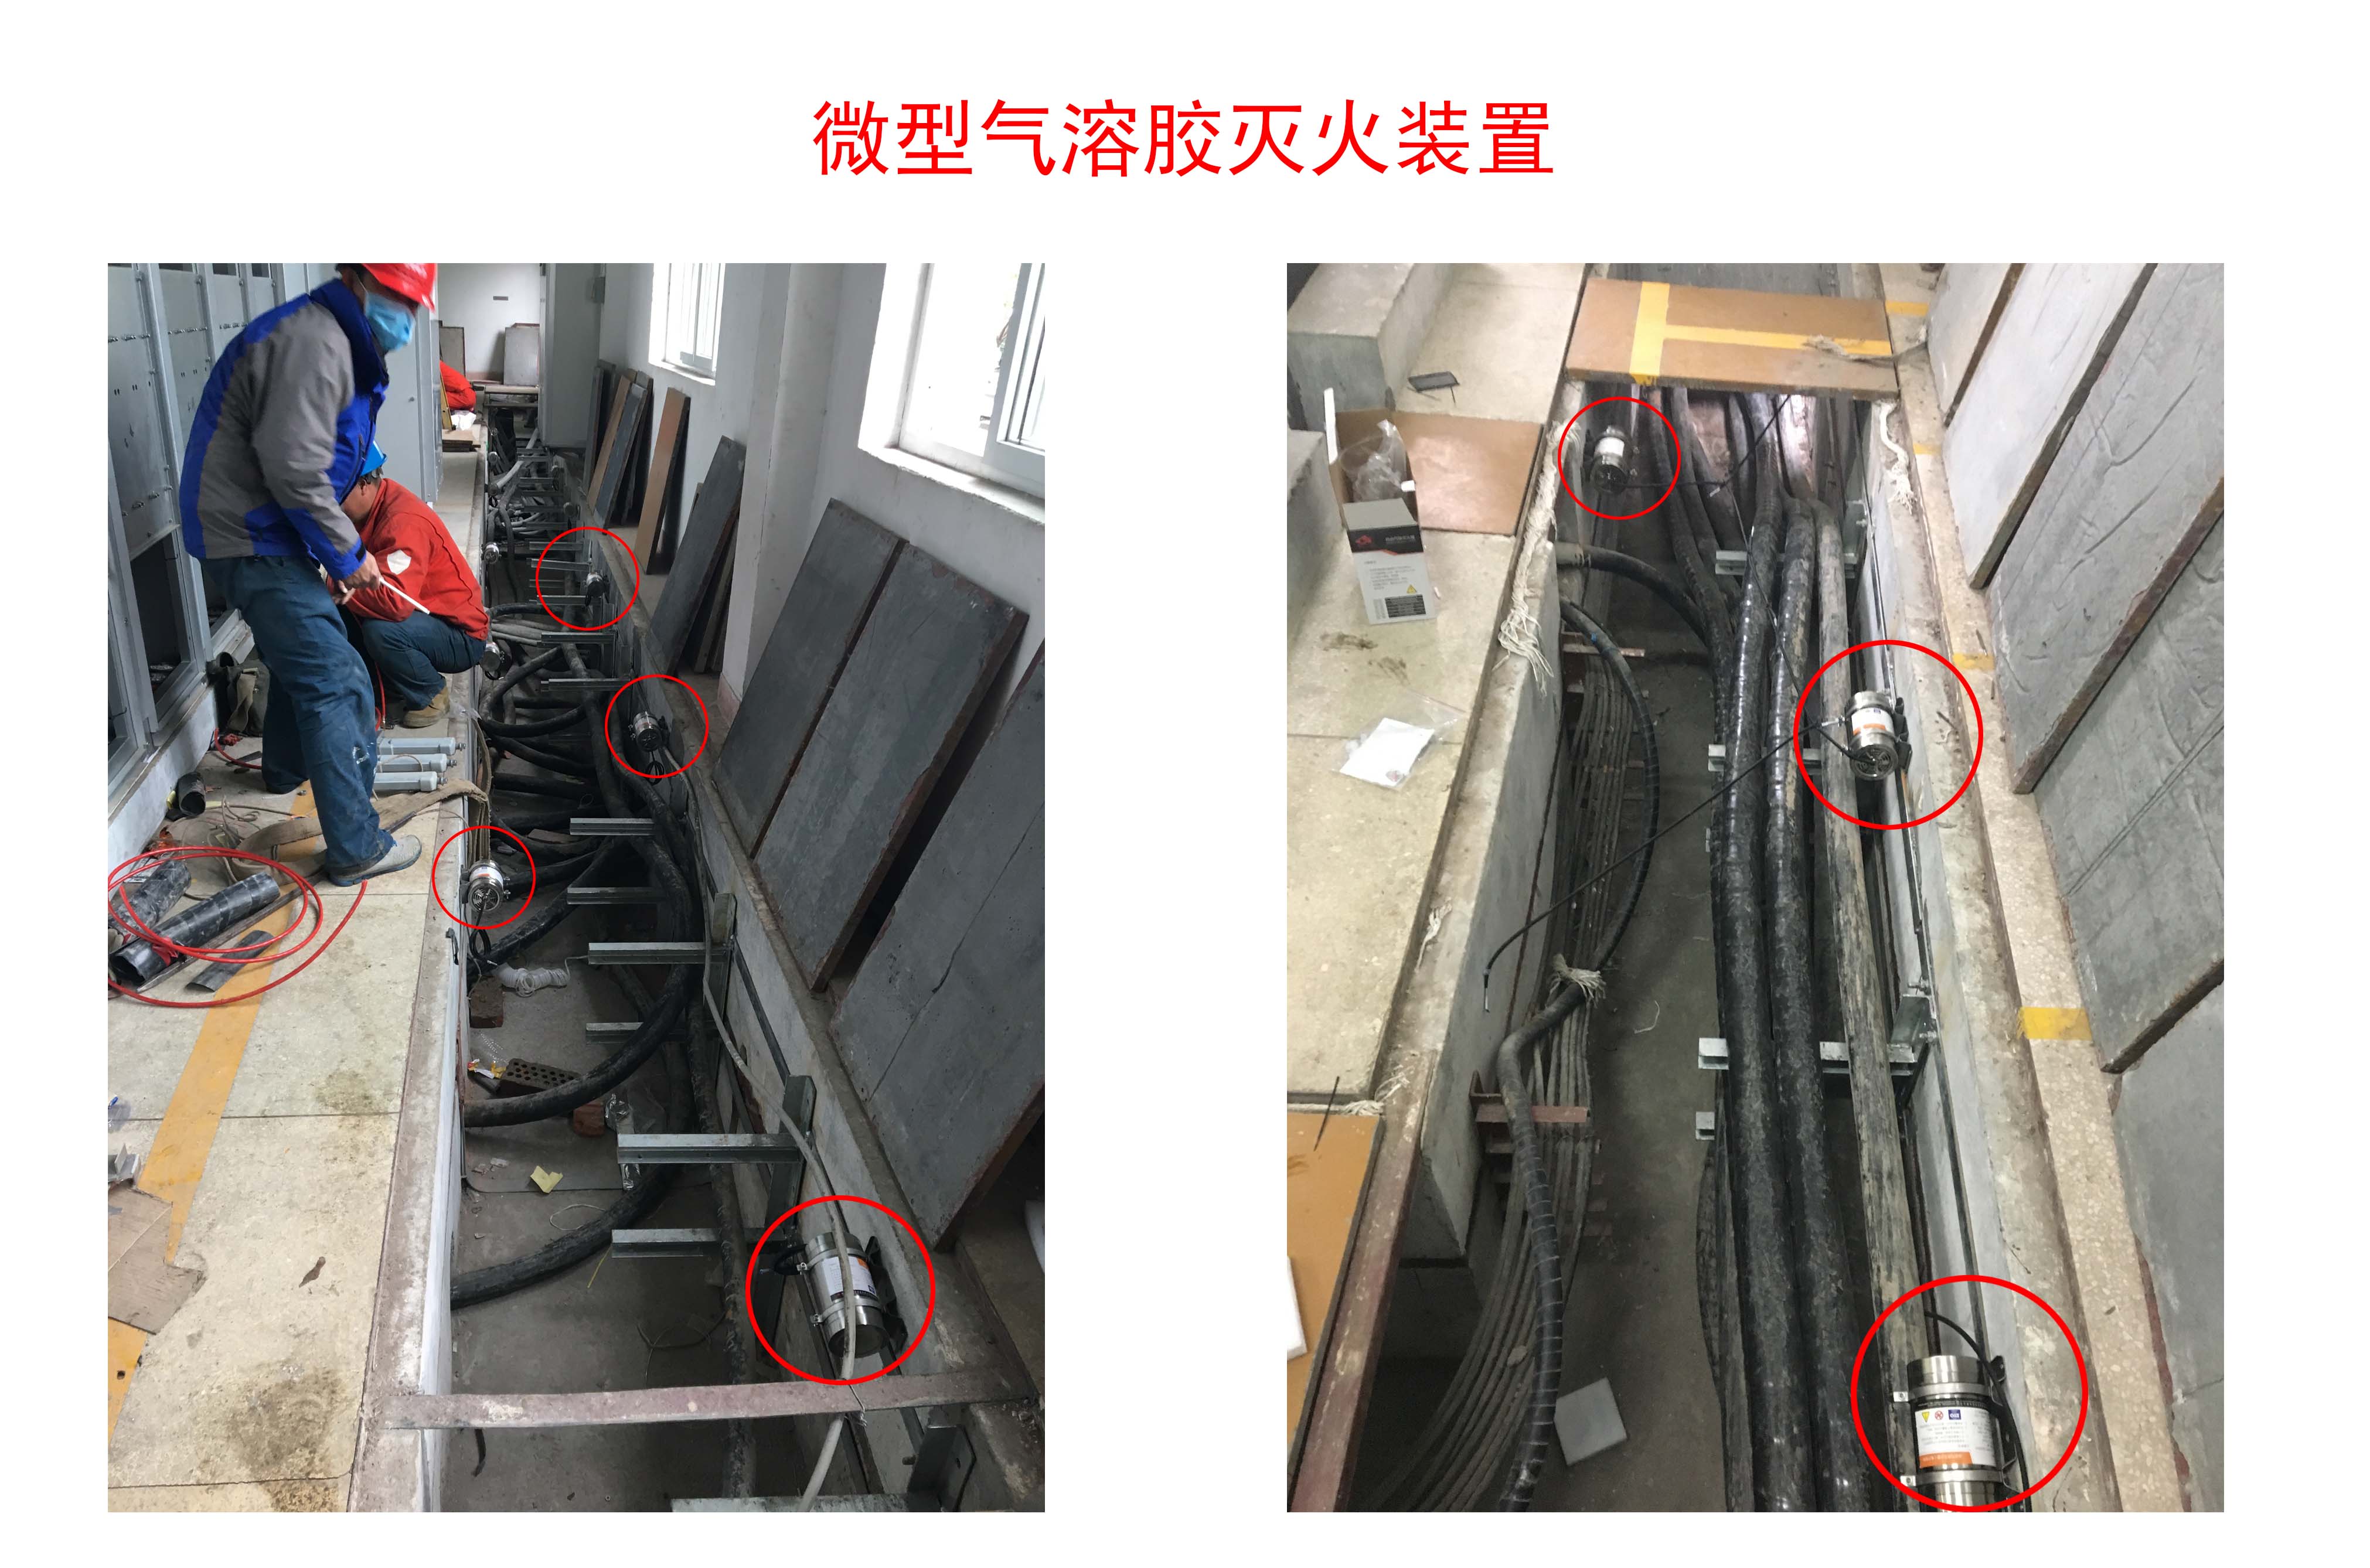 邢台123：这根电线杆子上裸露的电缆连个基本防护都不做，出了问题谁负责？